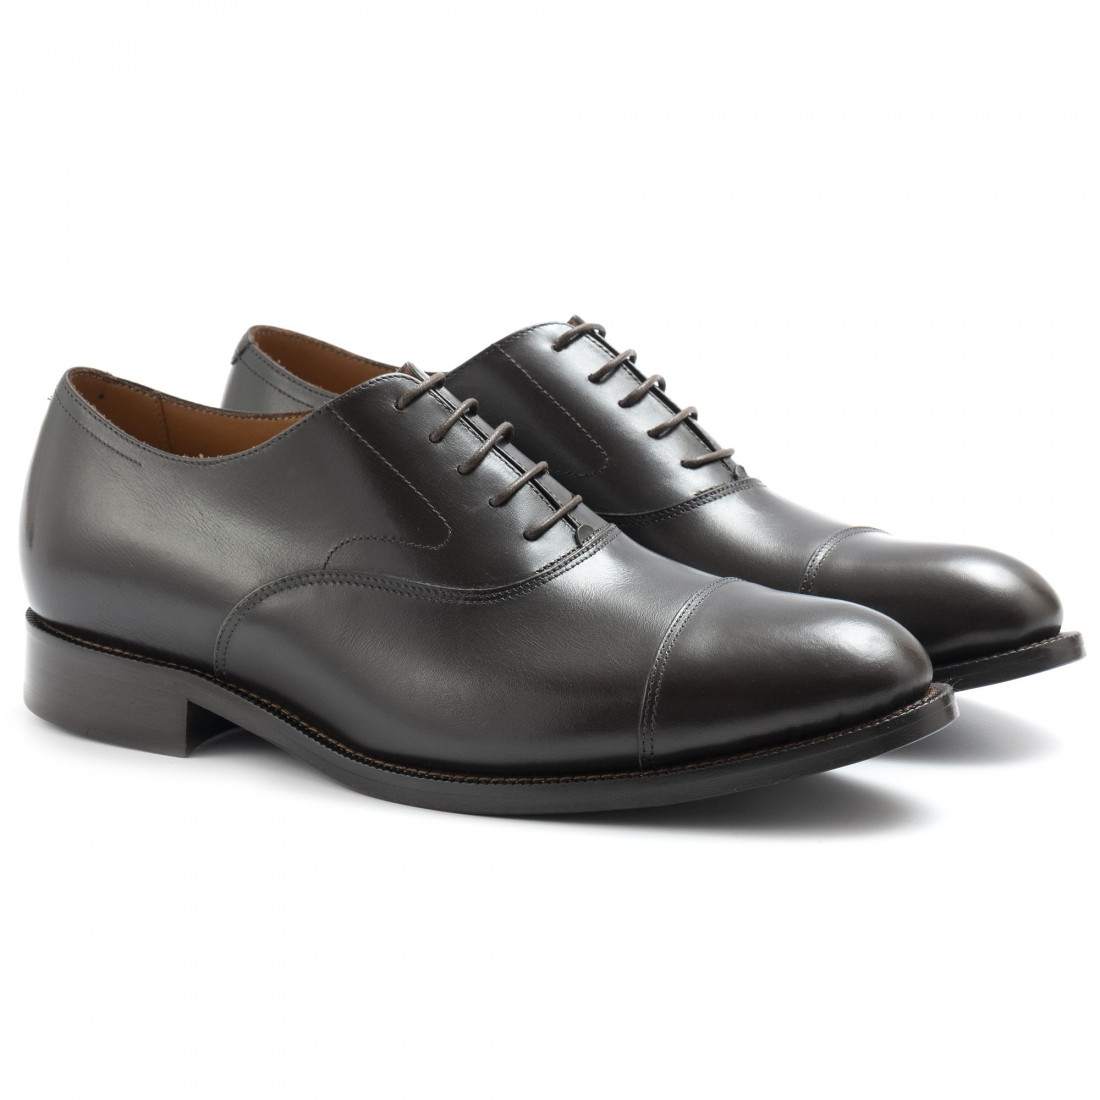 Botti handgefertigte Oxford Brown Schuhe für Herren mit abnehmbarem Fußbett